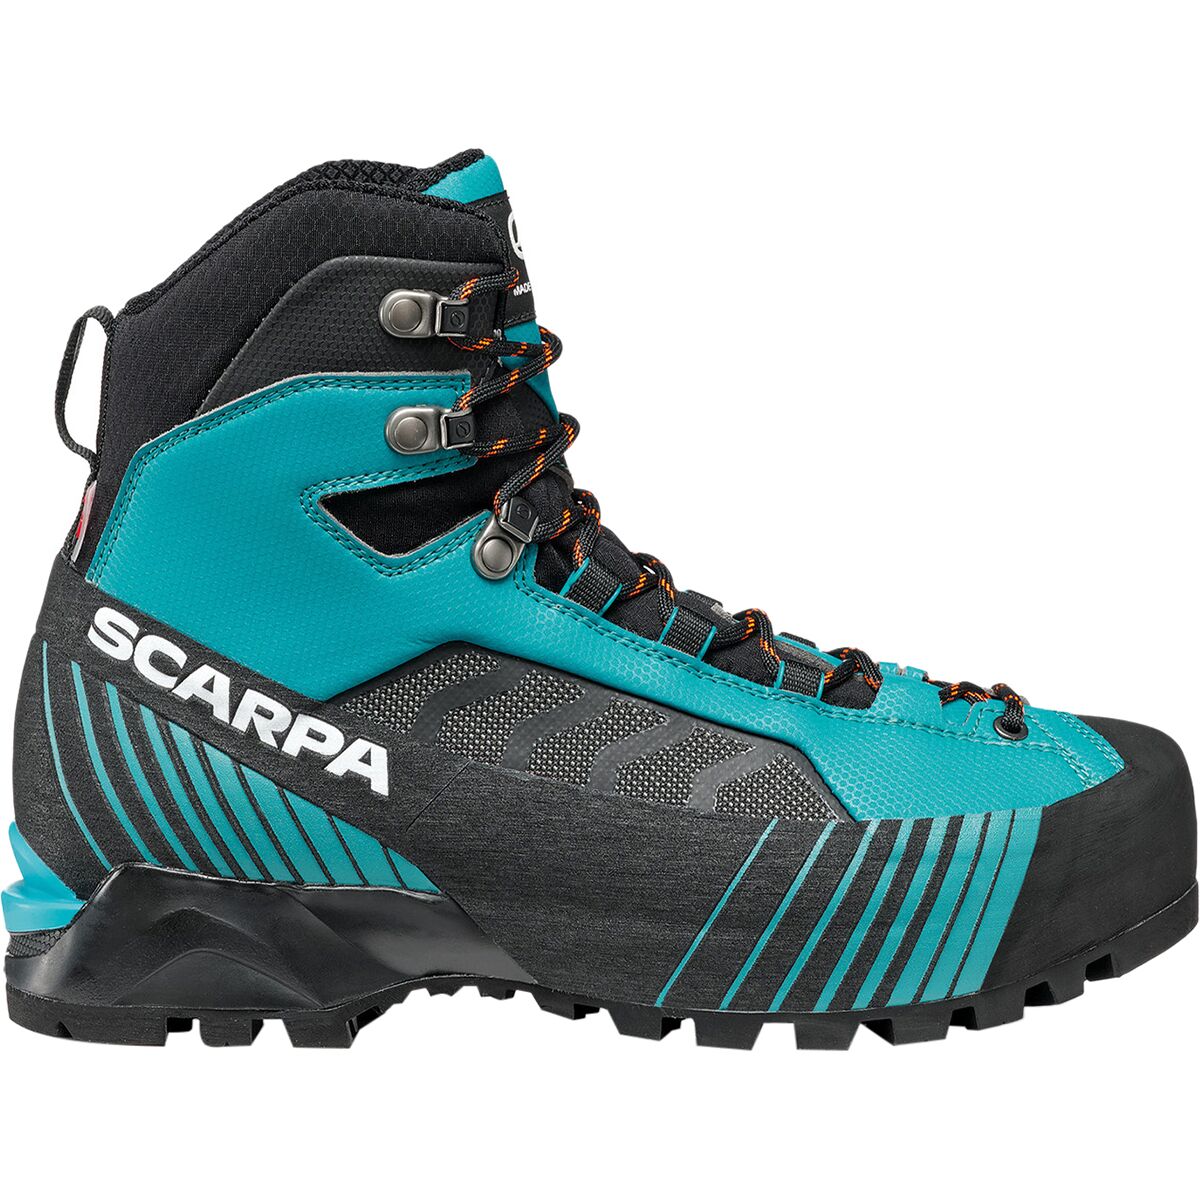 Scarpa Ribelle Lite HD Mountaineering Boot - Women's